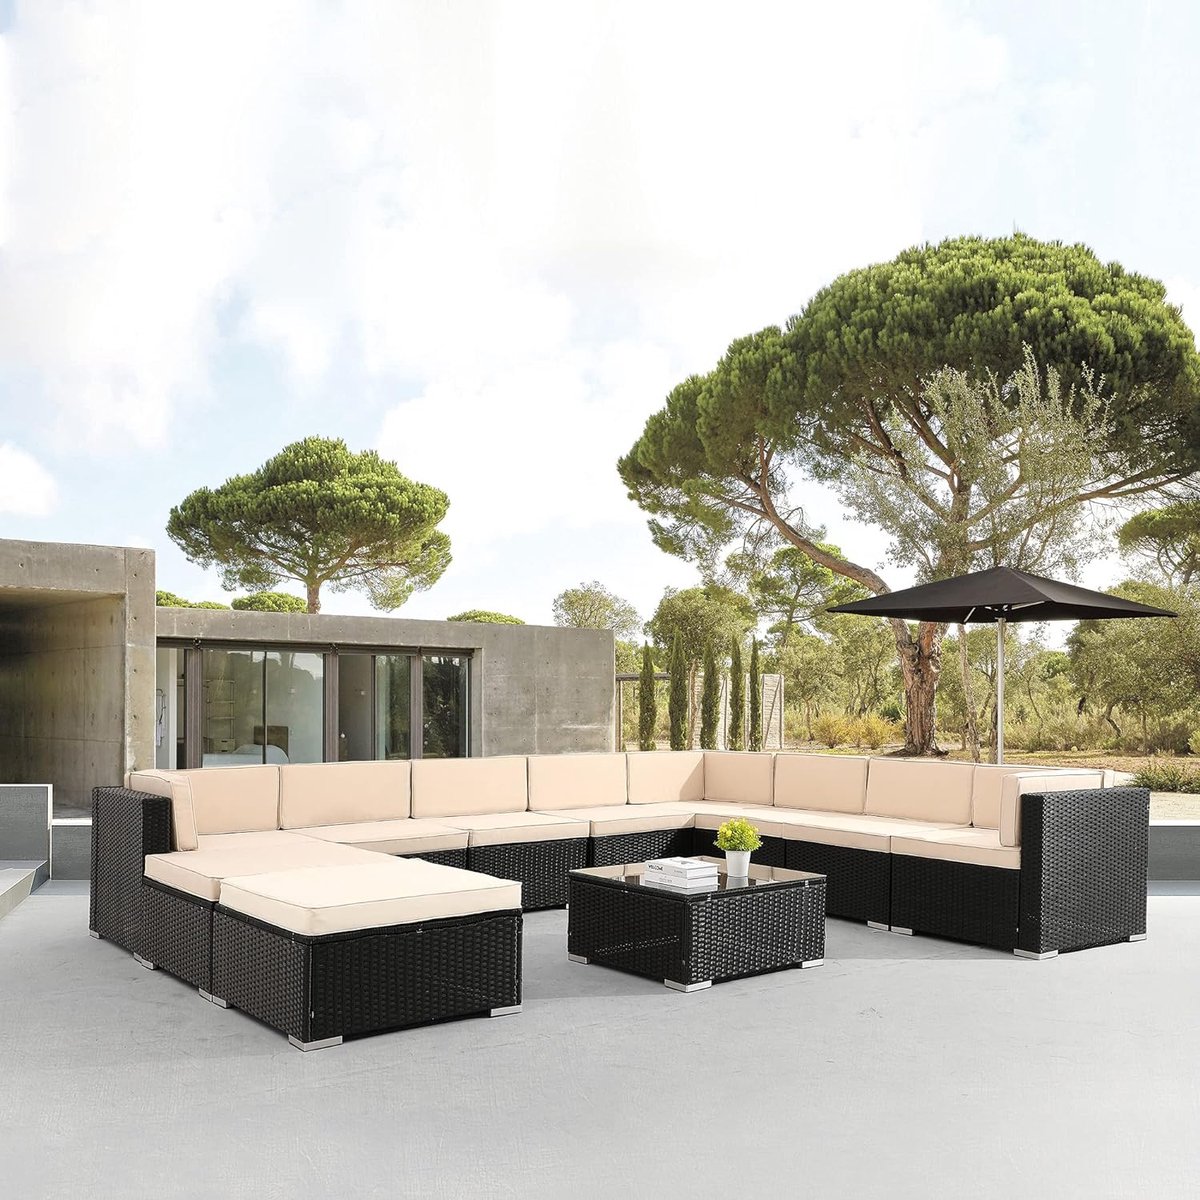 Arebos Poly rotan tuinmeubelen Lounge | Incl. zitkussen | 10 personen | UV-bestendig polyrotan vlechtwerk | tafel met glasplaat | vrij te combineren | zwart